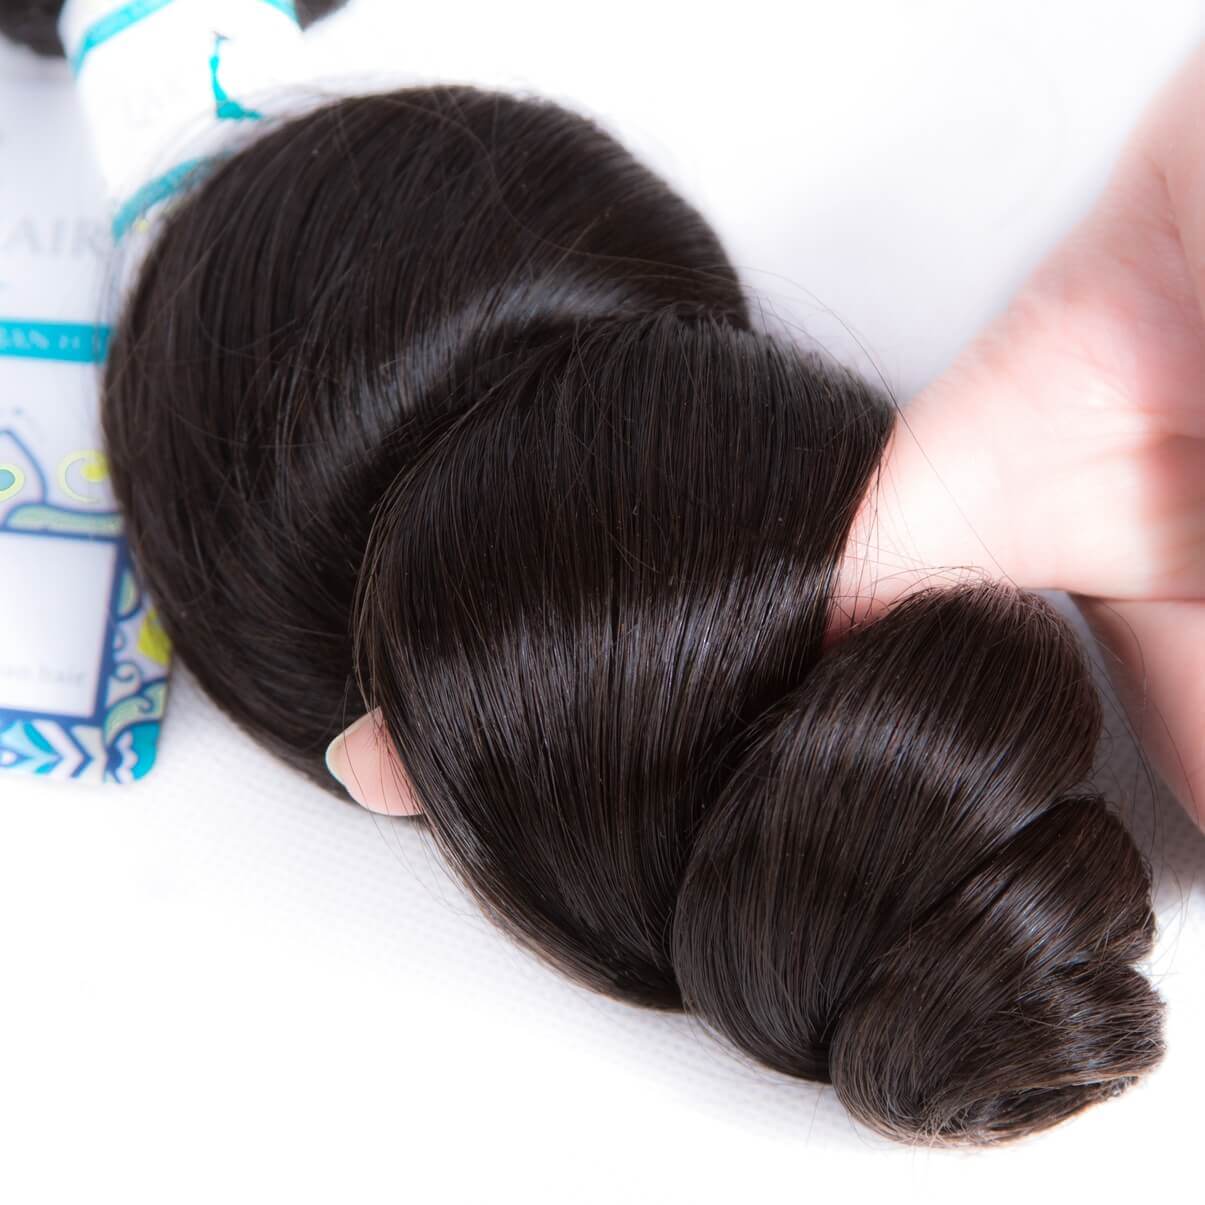 Lakihair Loose Wave Human Hair Bundles 4 Bundles Brazilian/Indian/Peruvian/Malaysian Virgin Human Hair Extensions